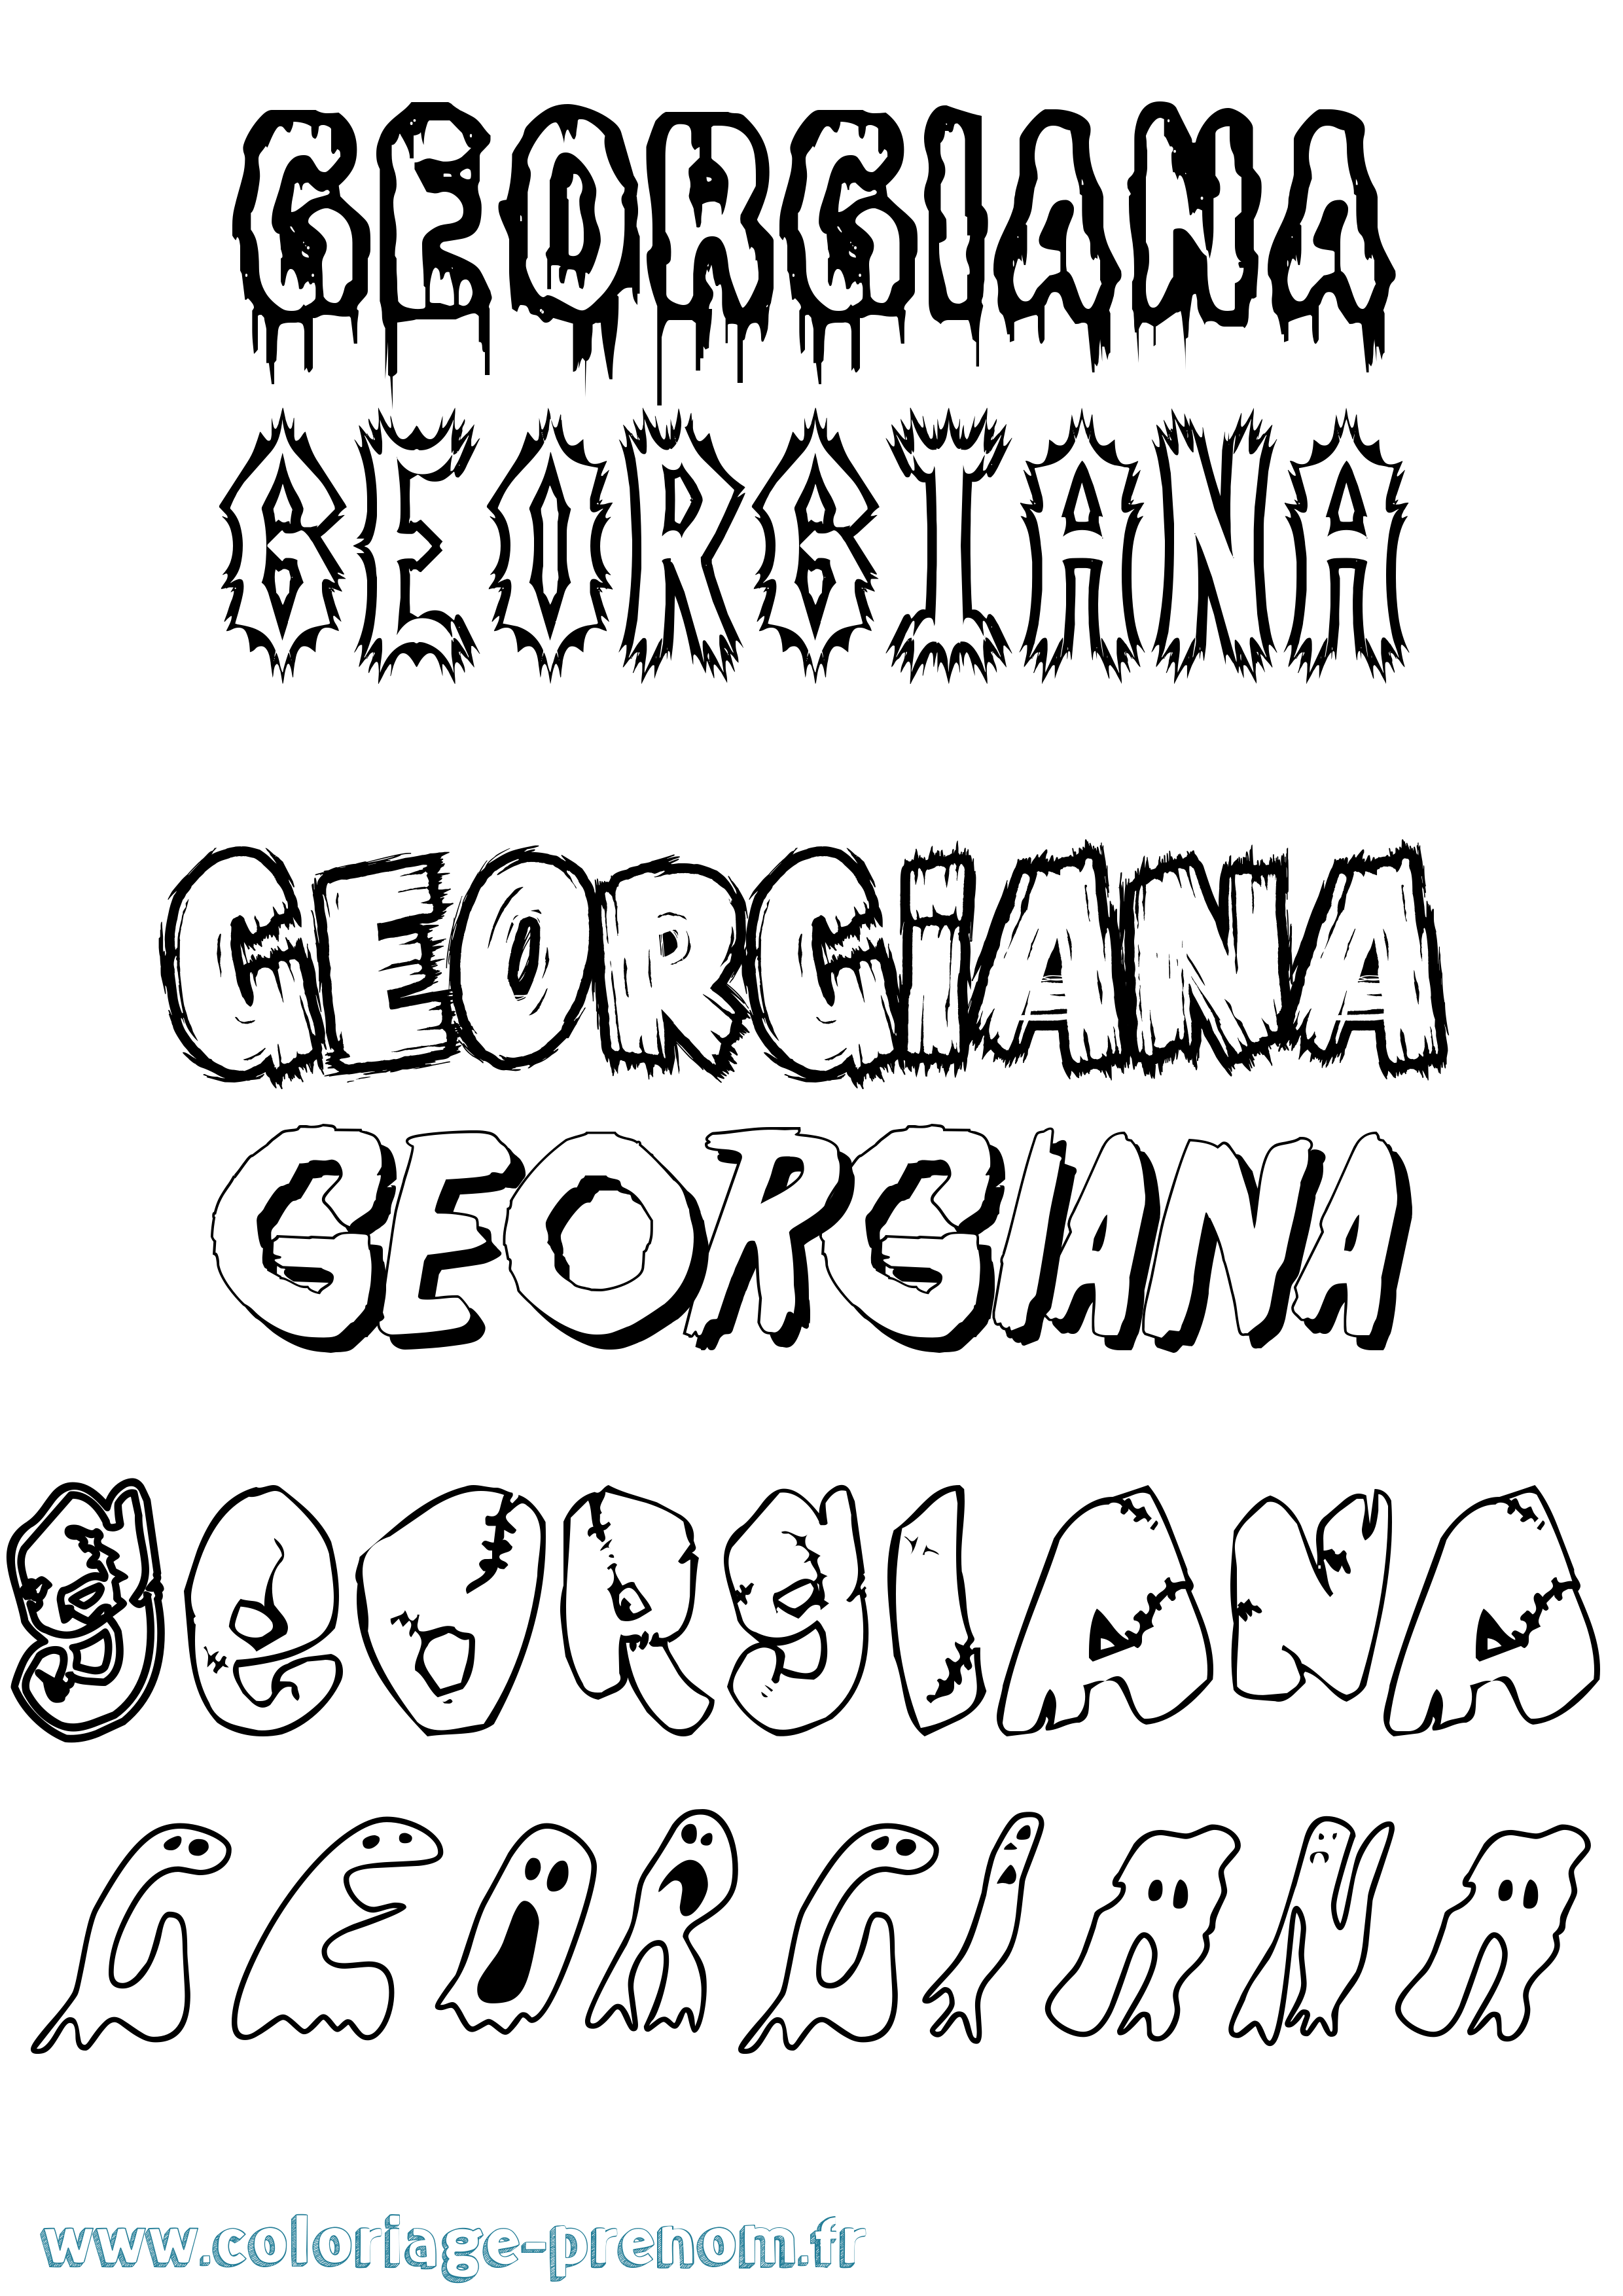 Coloriage prénom Georgiana Frisson